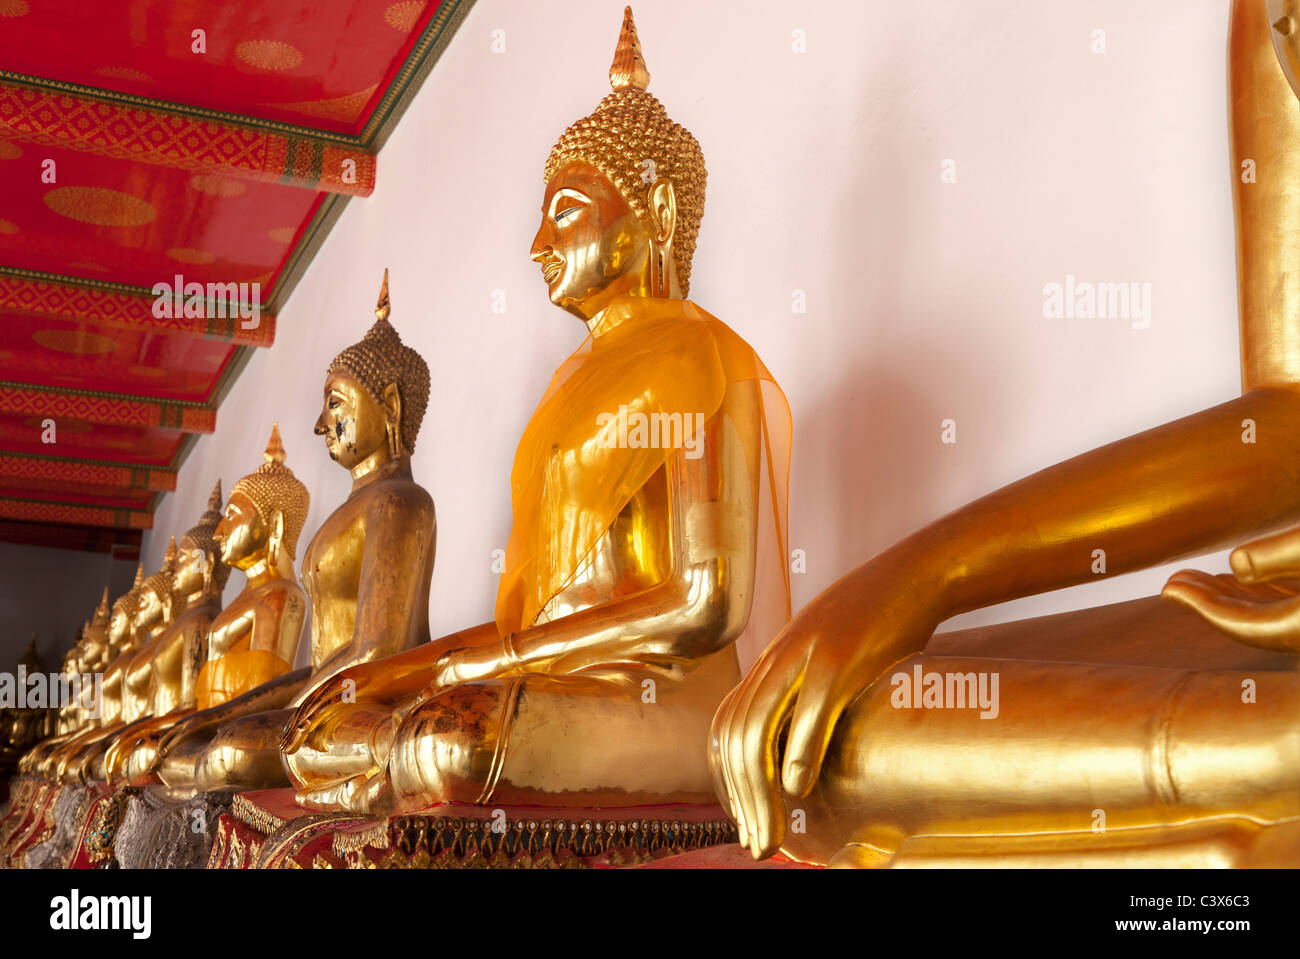 Temple de Wat Pho, Bangkok - rangée de bouddhas assis 4 Banque D'Images